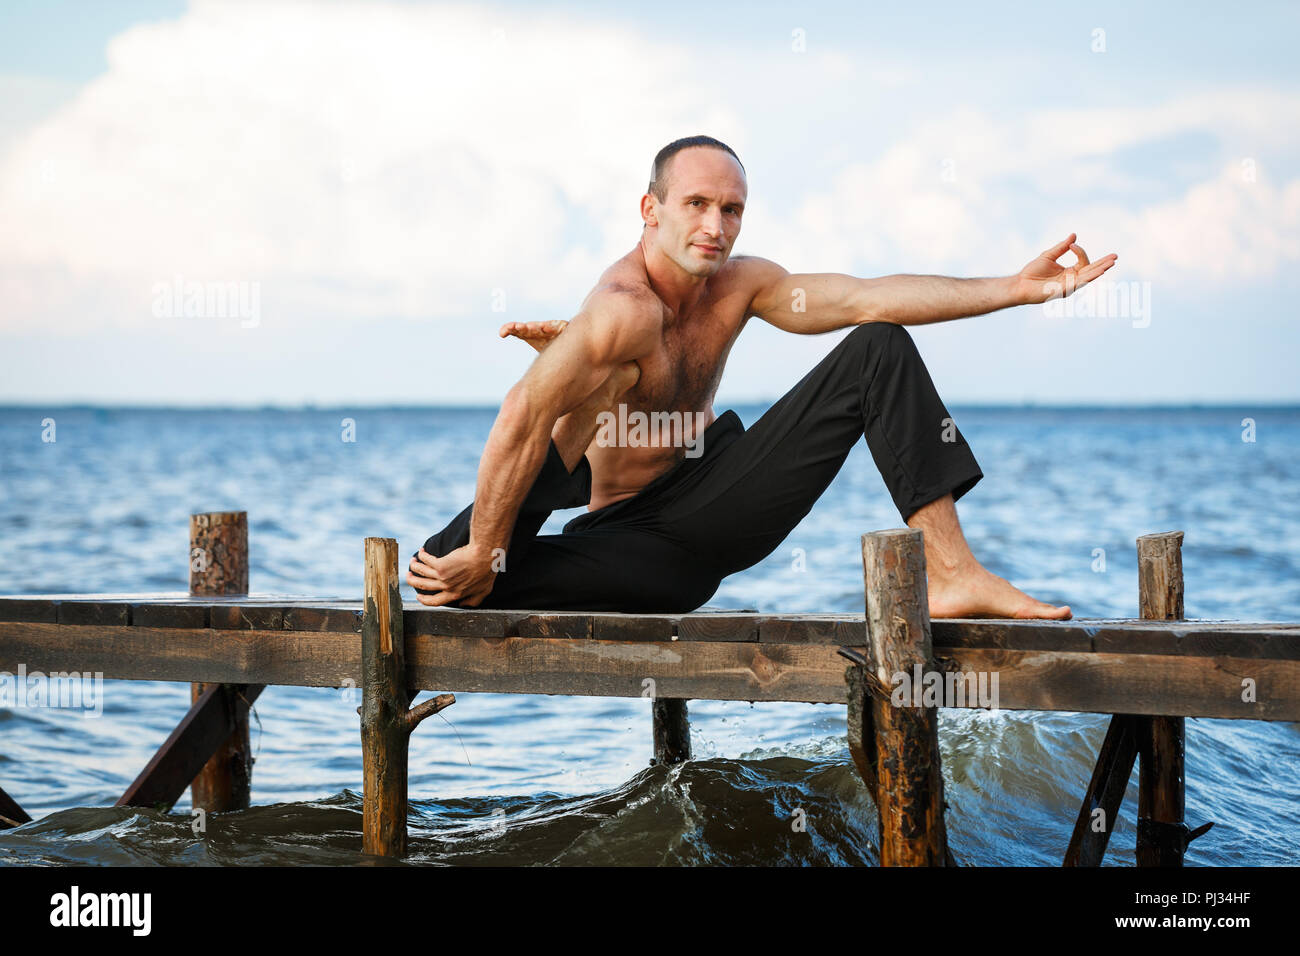 Junge yoga Trainer Yoga Übungen auf einer hölzernen Pier an einem See oder Fluss Ufer. Gesunder Lebensstil Konzept Stockfoto